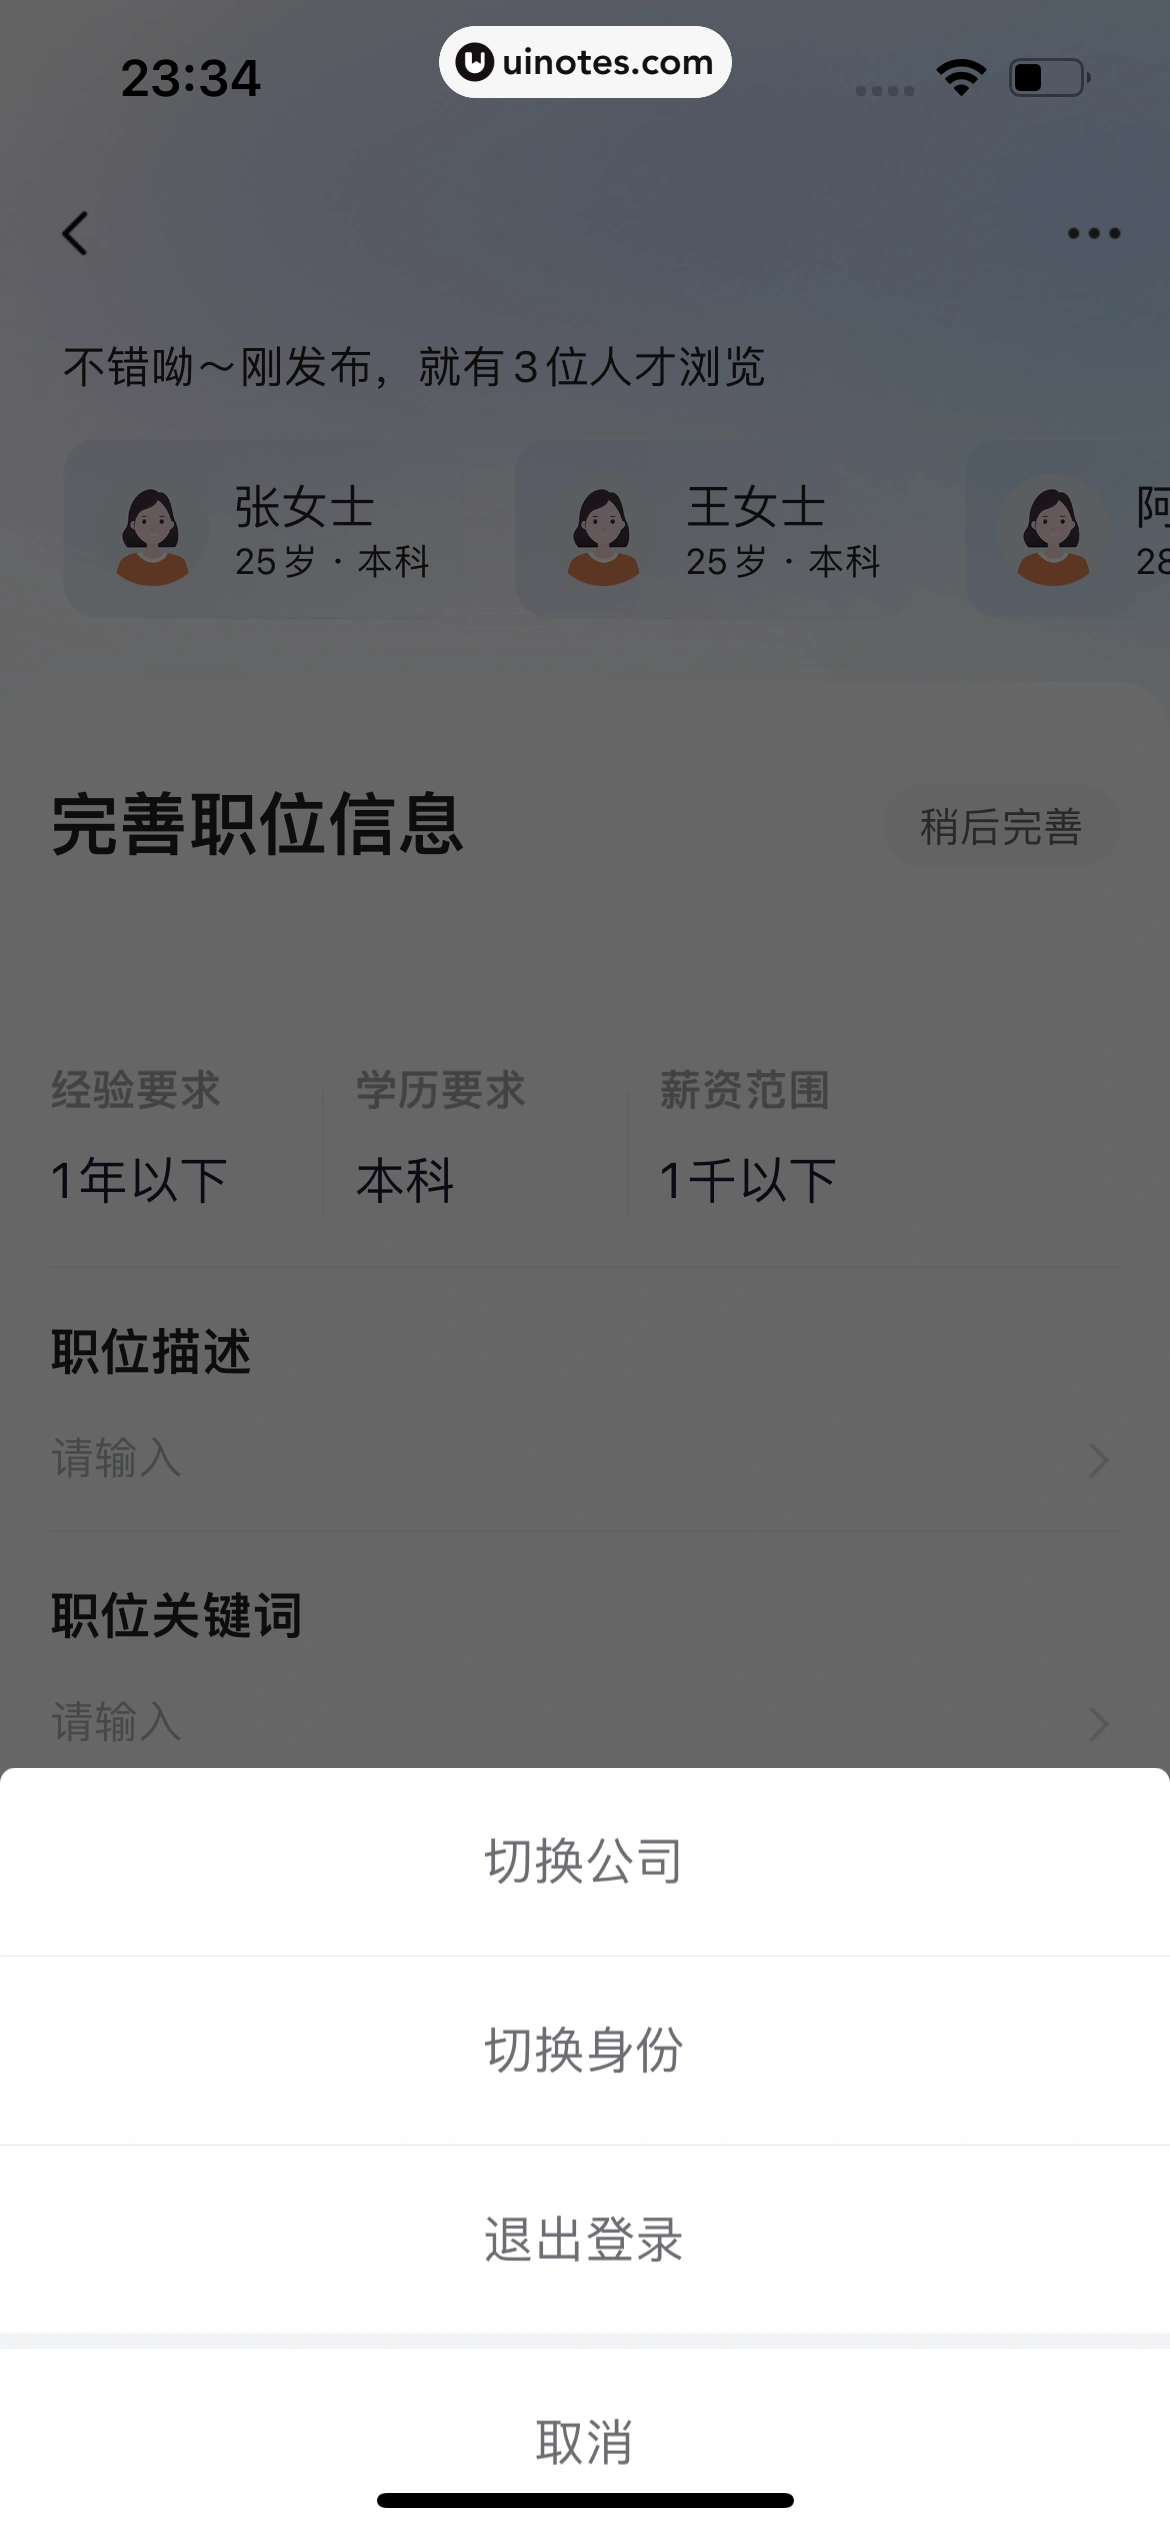 智联招聘 App 截图 706 - UI Notes